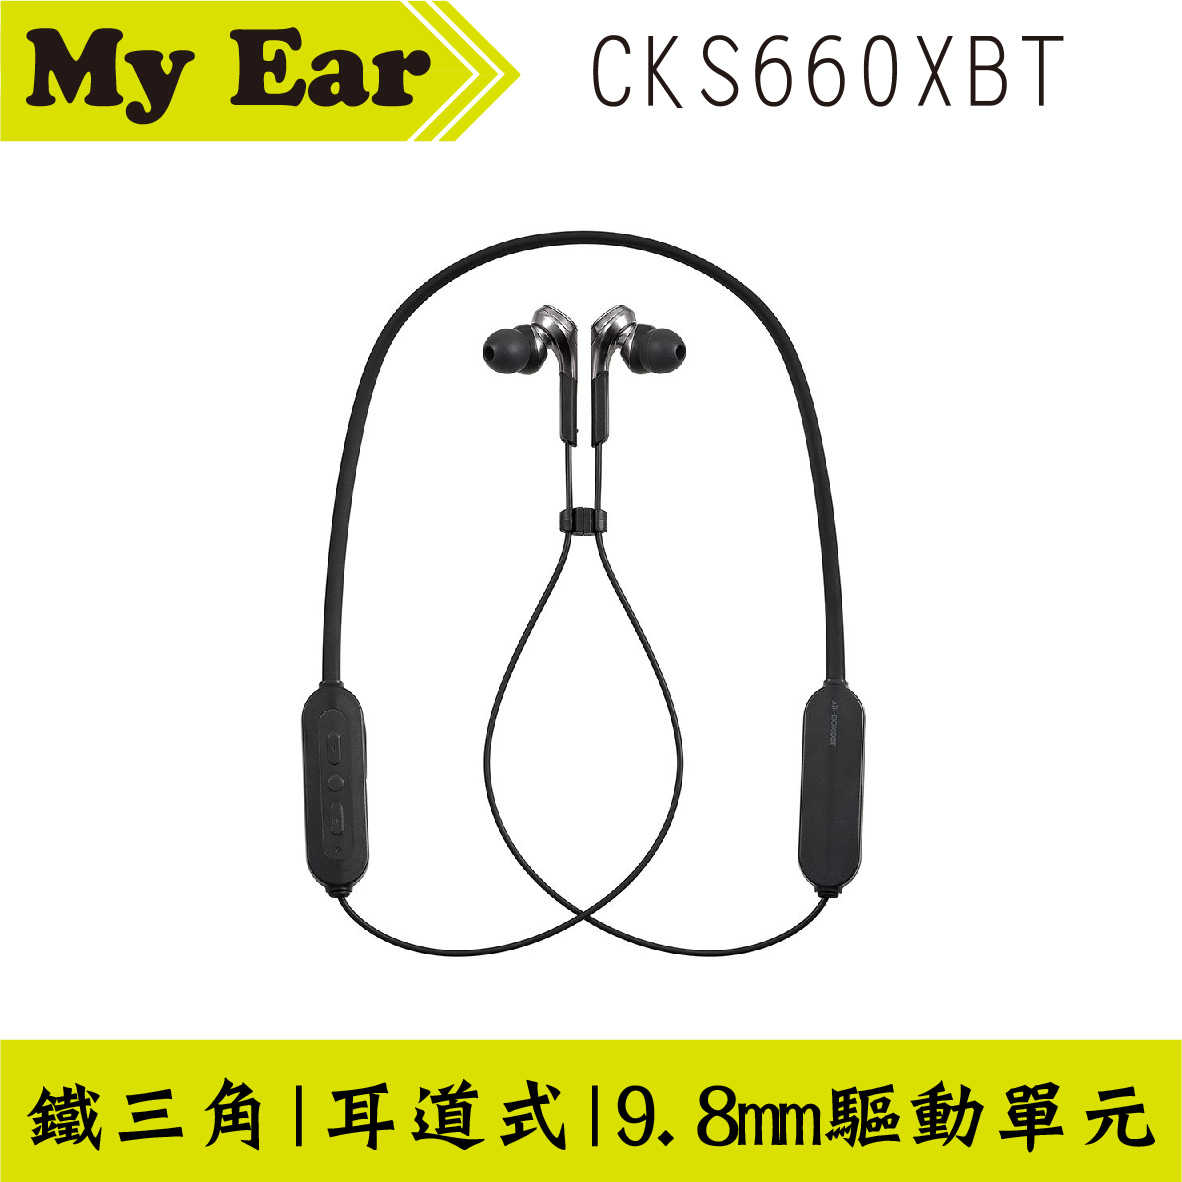 鐵三角 ATH-CKS660XBT 鐵灰 重低音 麥克風 藍芽 繞頸 耳塞式 耳機｜ My Ear耳機專門店